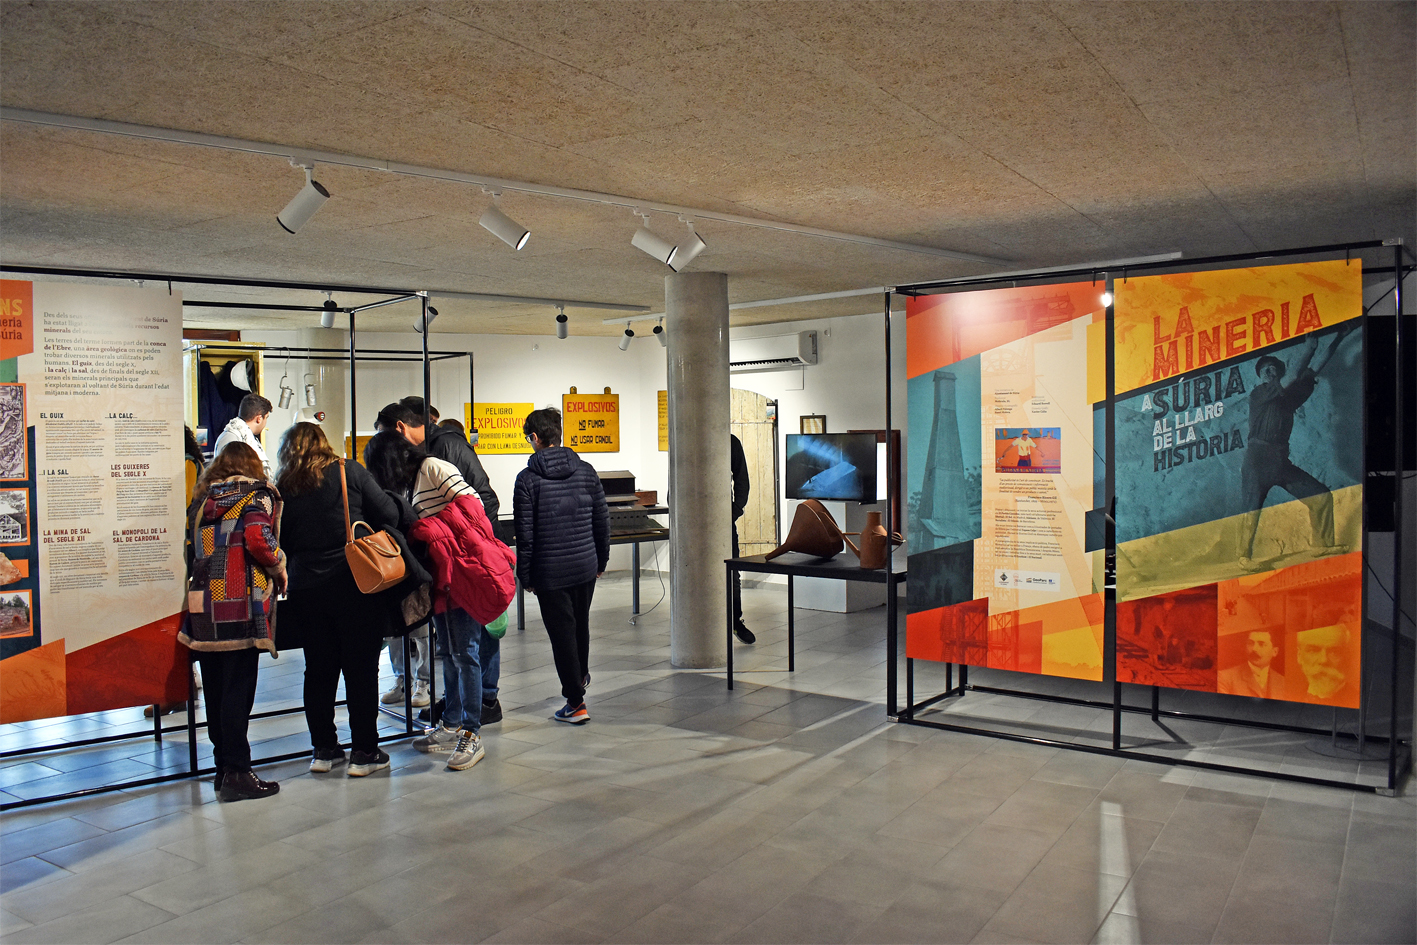 Visites al centre d'interpretaciÃ³ del Museu de la Mineria, durant la 20a Fira Medieval d'Oficis de SÃºria.